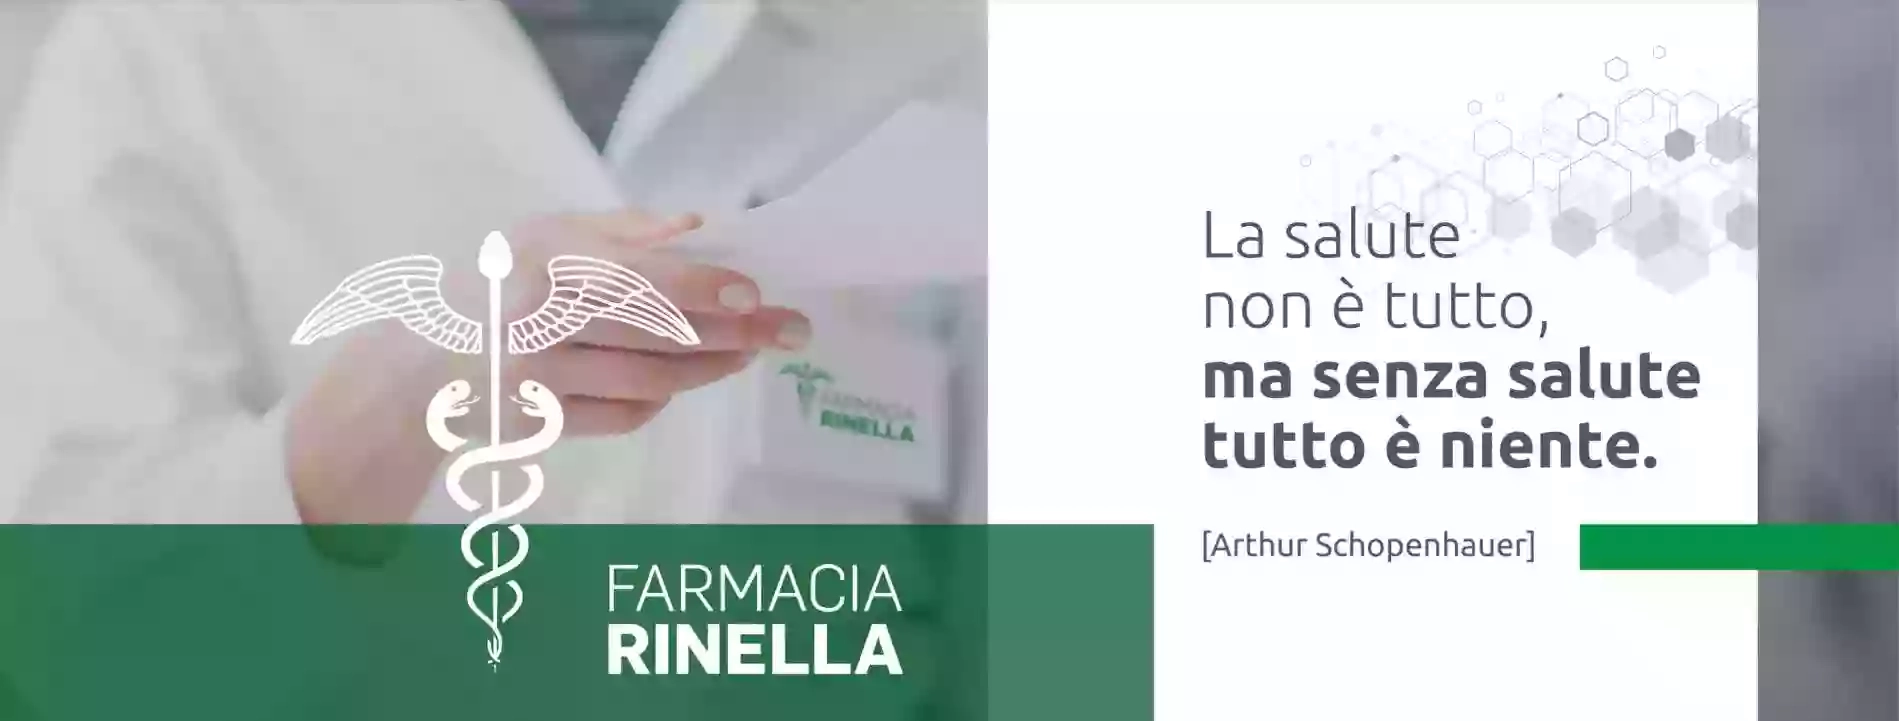 Farmacia Rinella snc